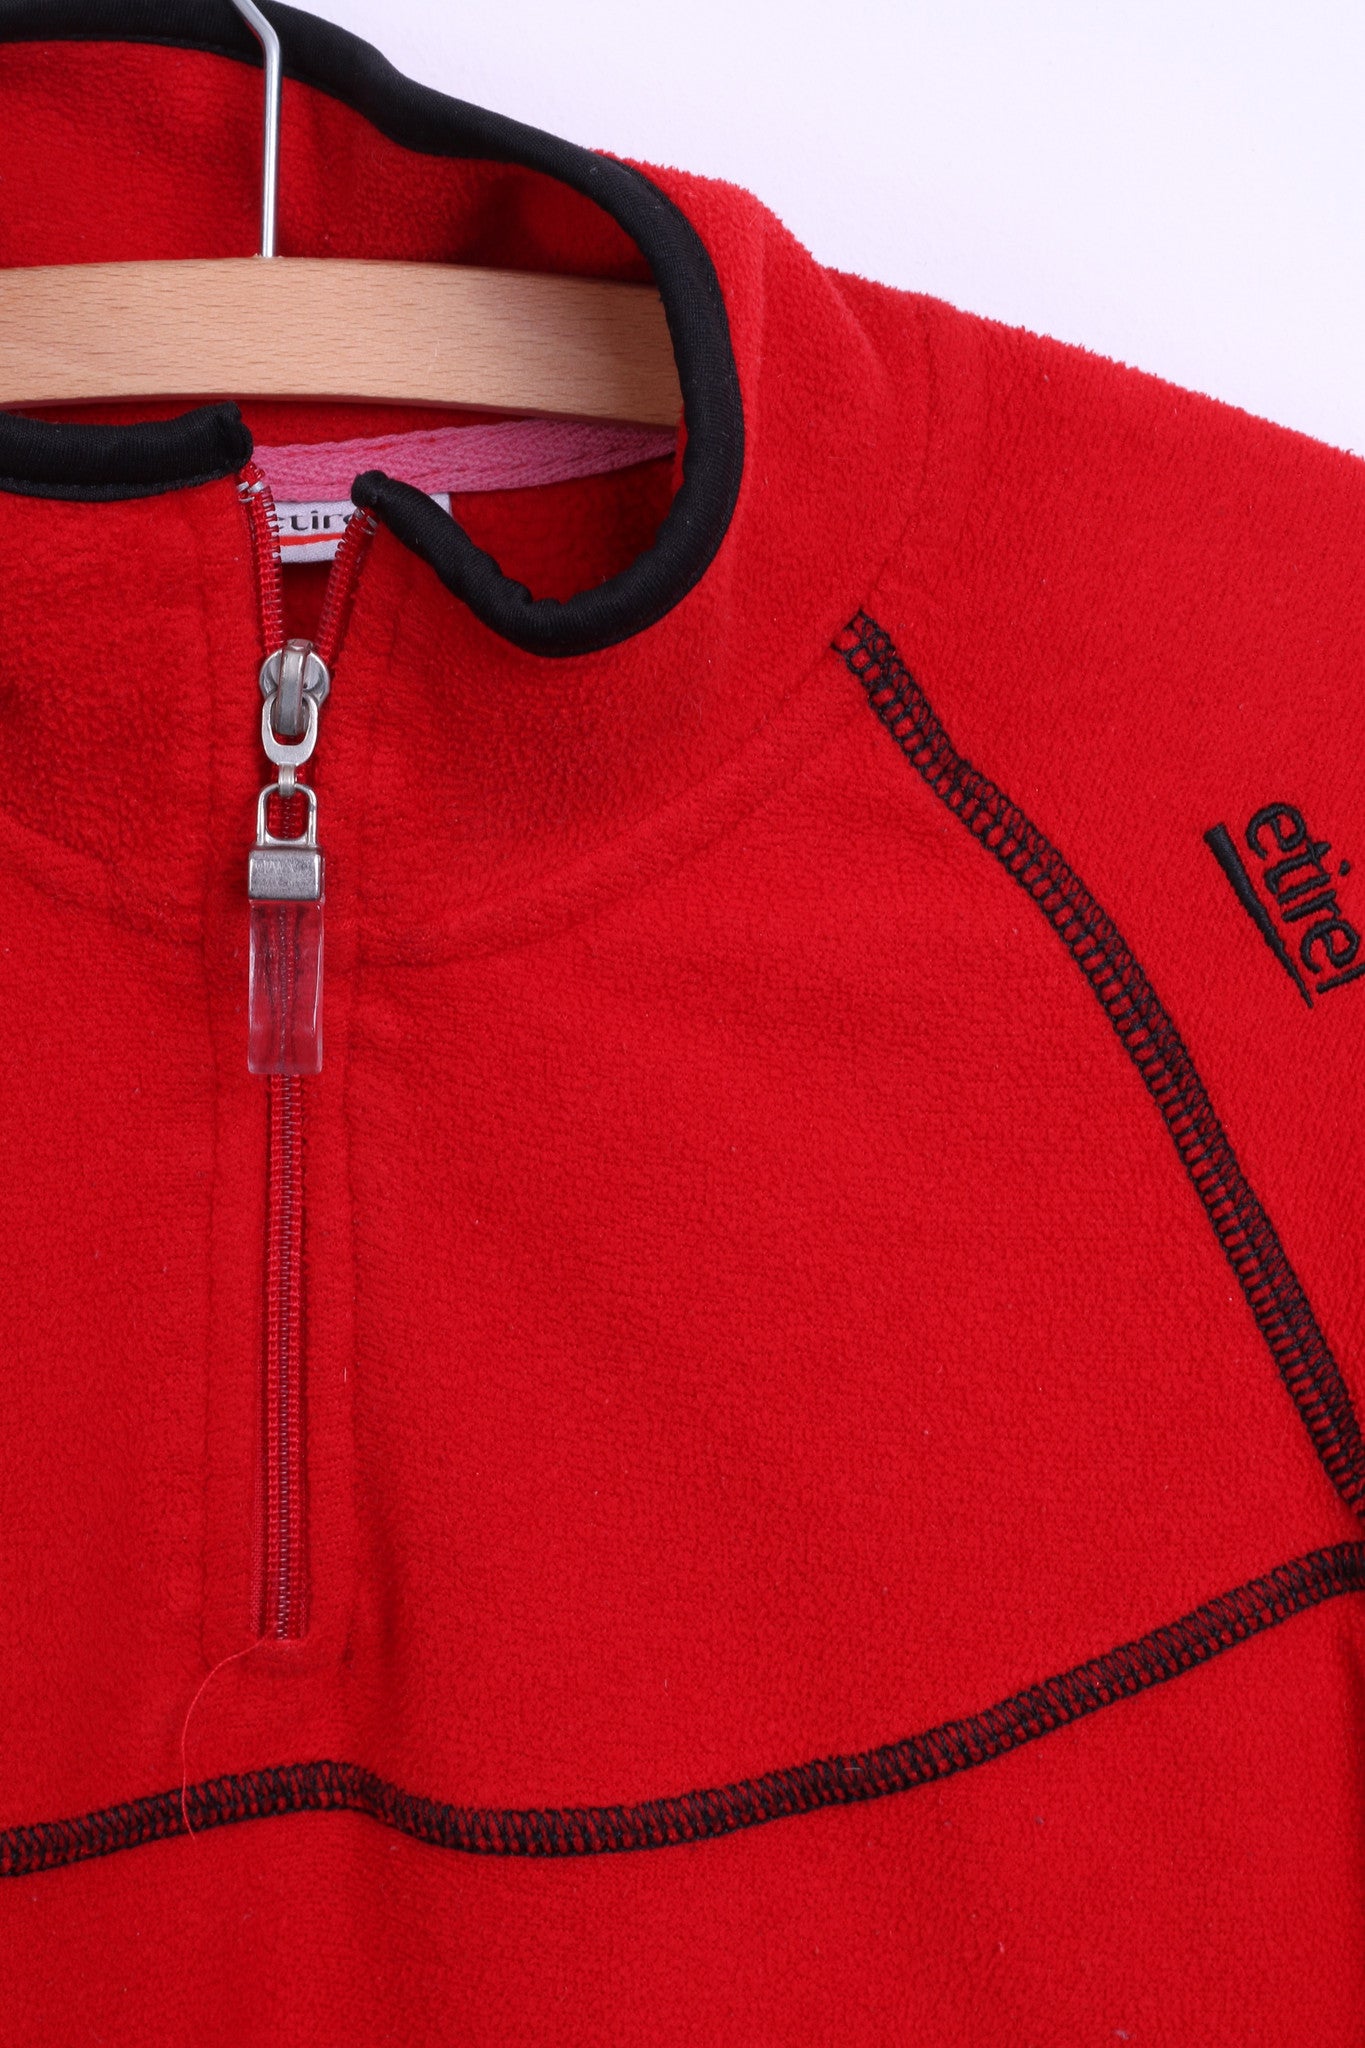 Etirel Womens S/M Fleece Top Jacket Red Zip Neck Sweatshirt - RetrospectClothes